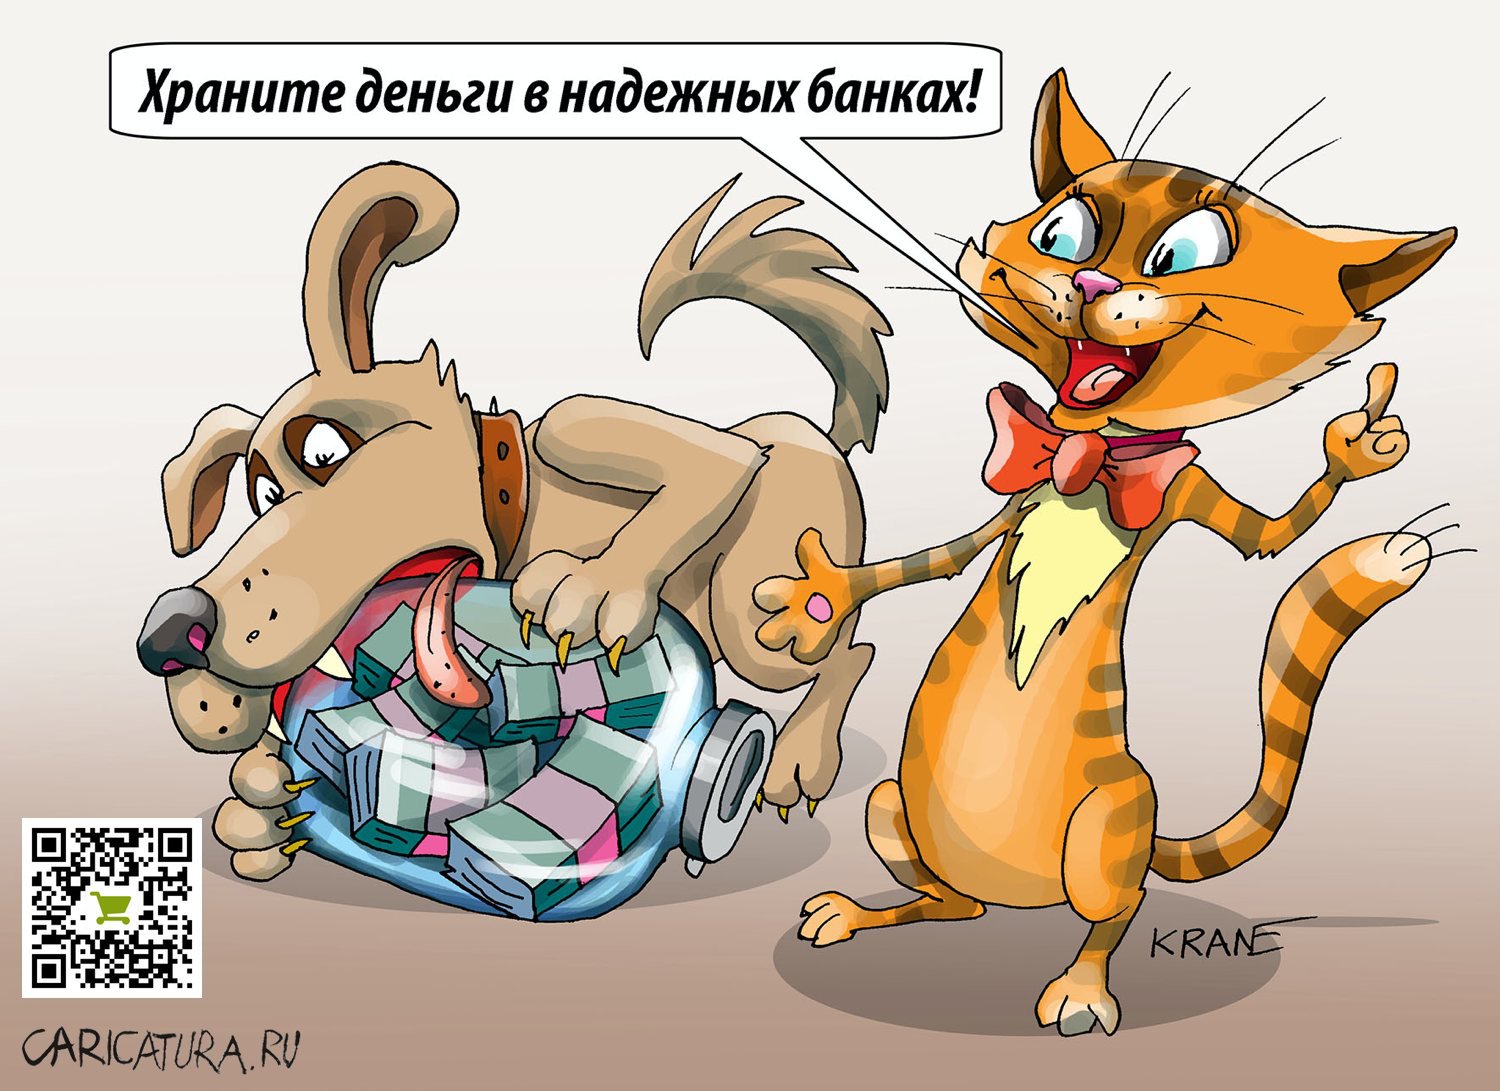 Карикатура "Держи карман шире", Евгений Кран